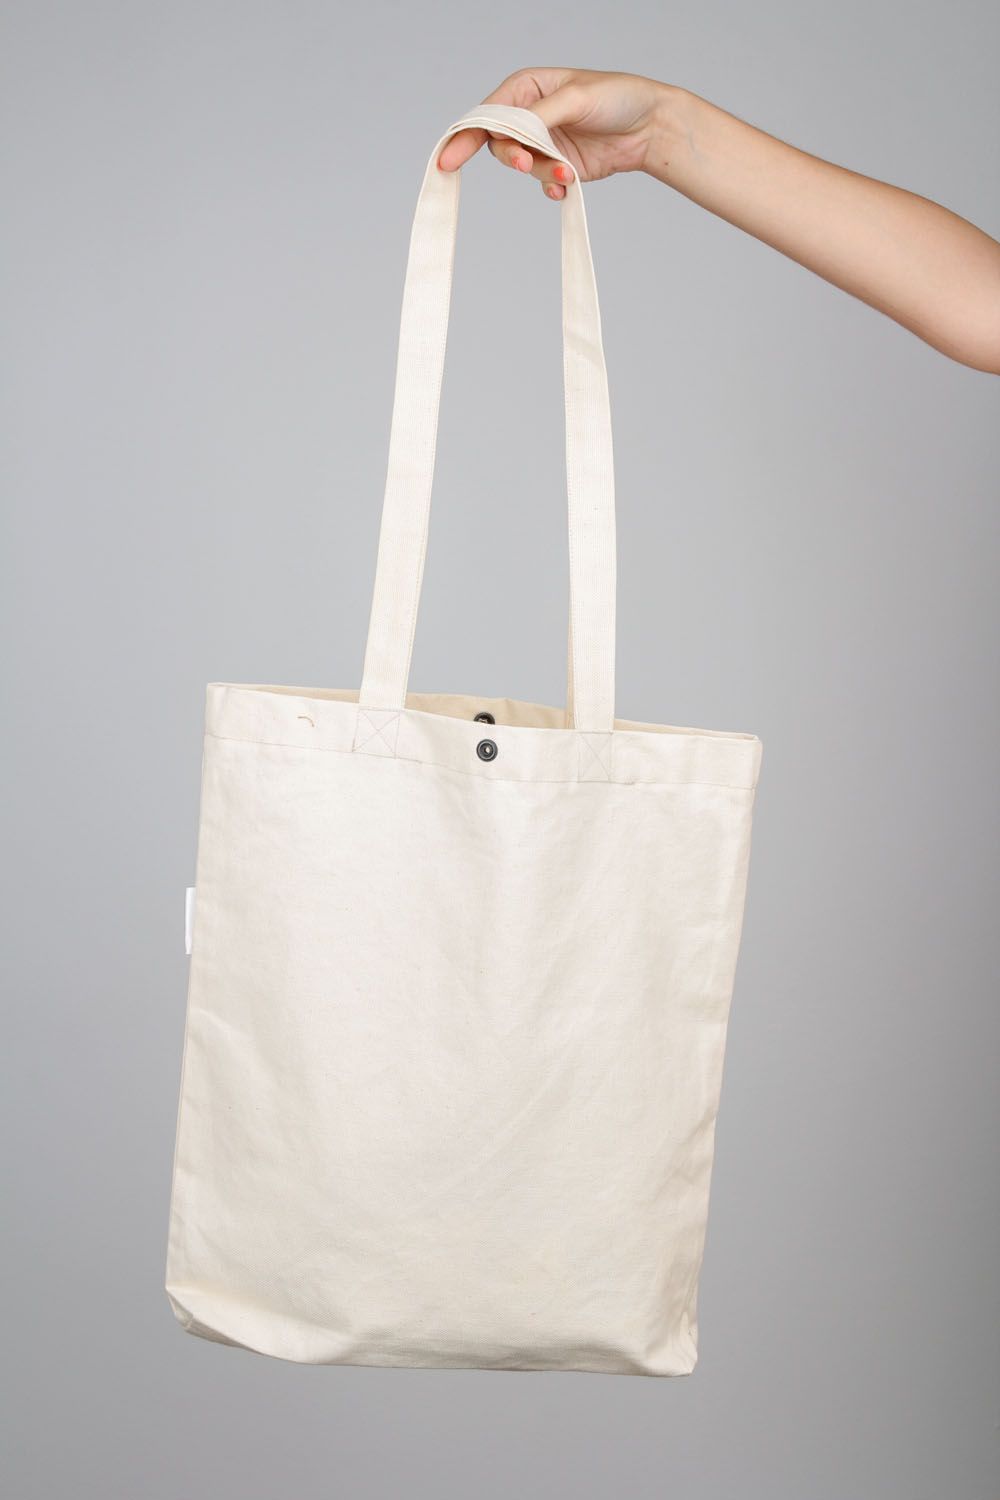 Текстильная сумка из коттона Геометрия фото 3